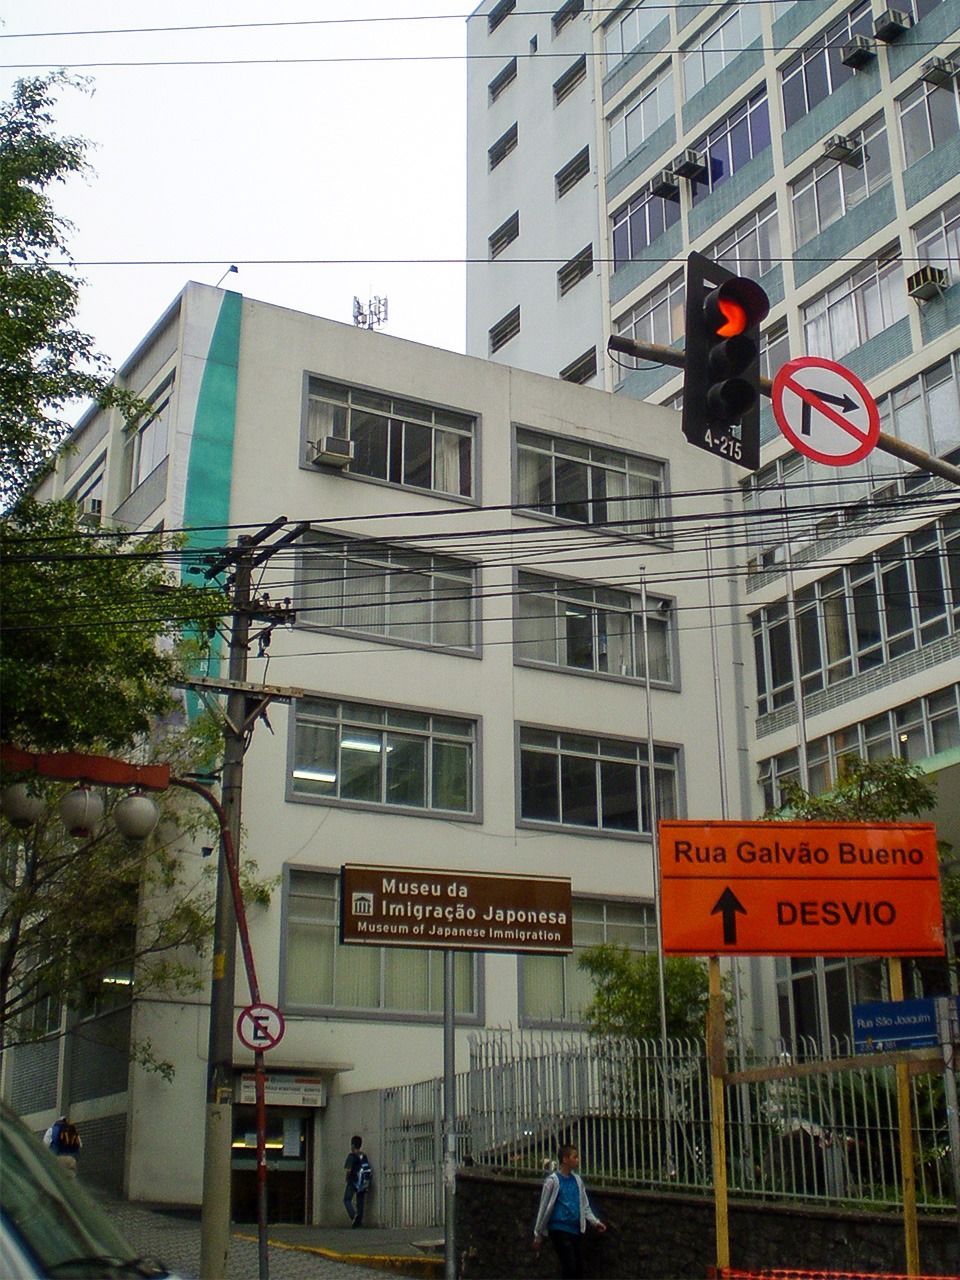 Les locaux de l’Association socioculturelle japonaise du Brésil (Burajiru Nihon bunka fukushi kyôkai) tels qu’ils se présentent aujourd’hui dans le quartier de la Liberdade, en plein cœur de São Paulo.